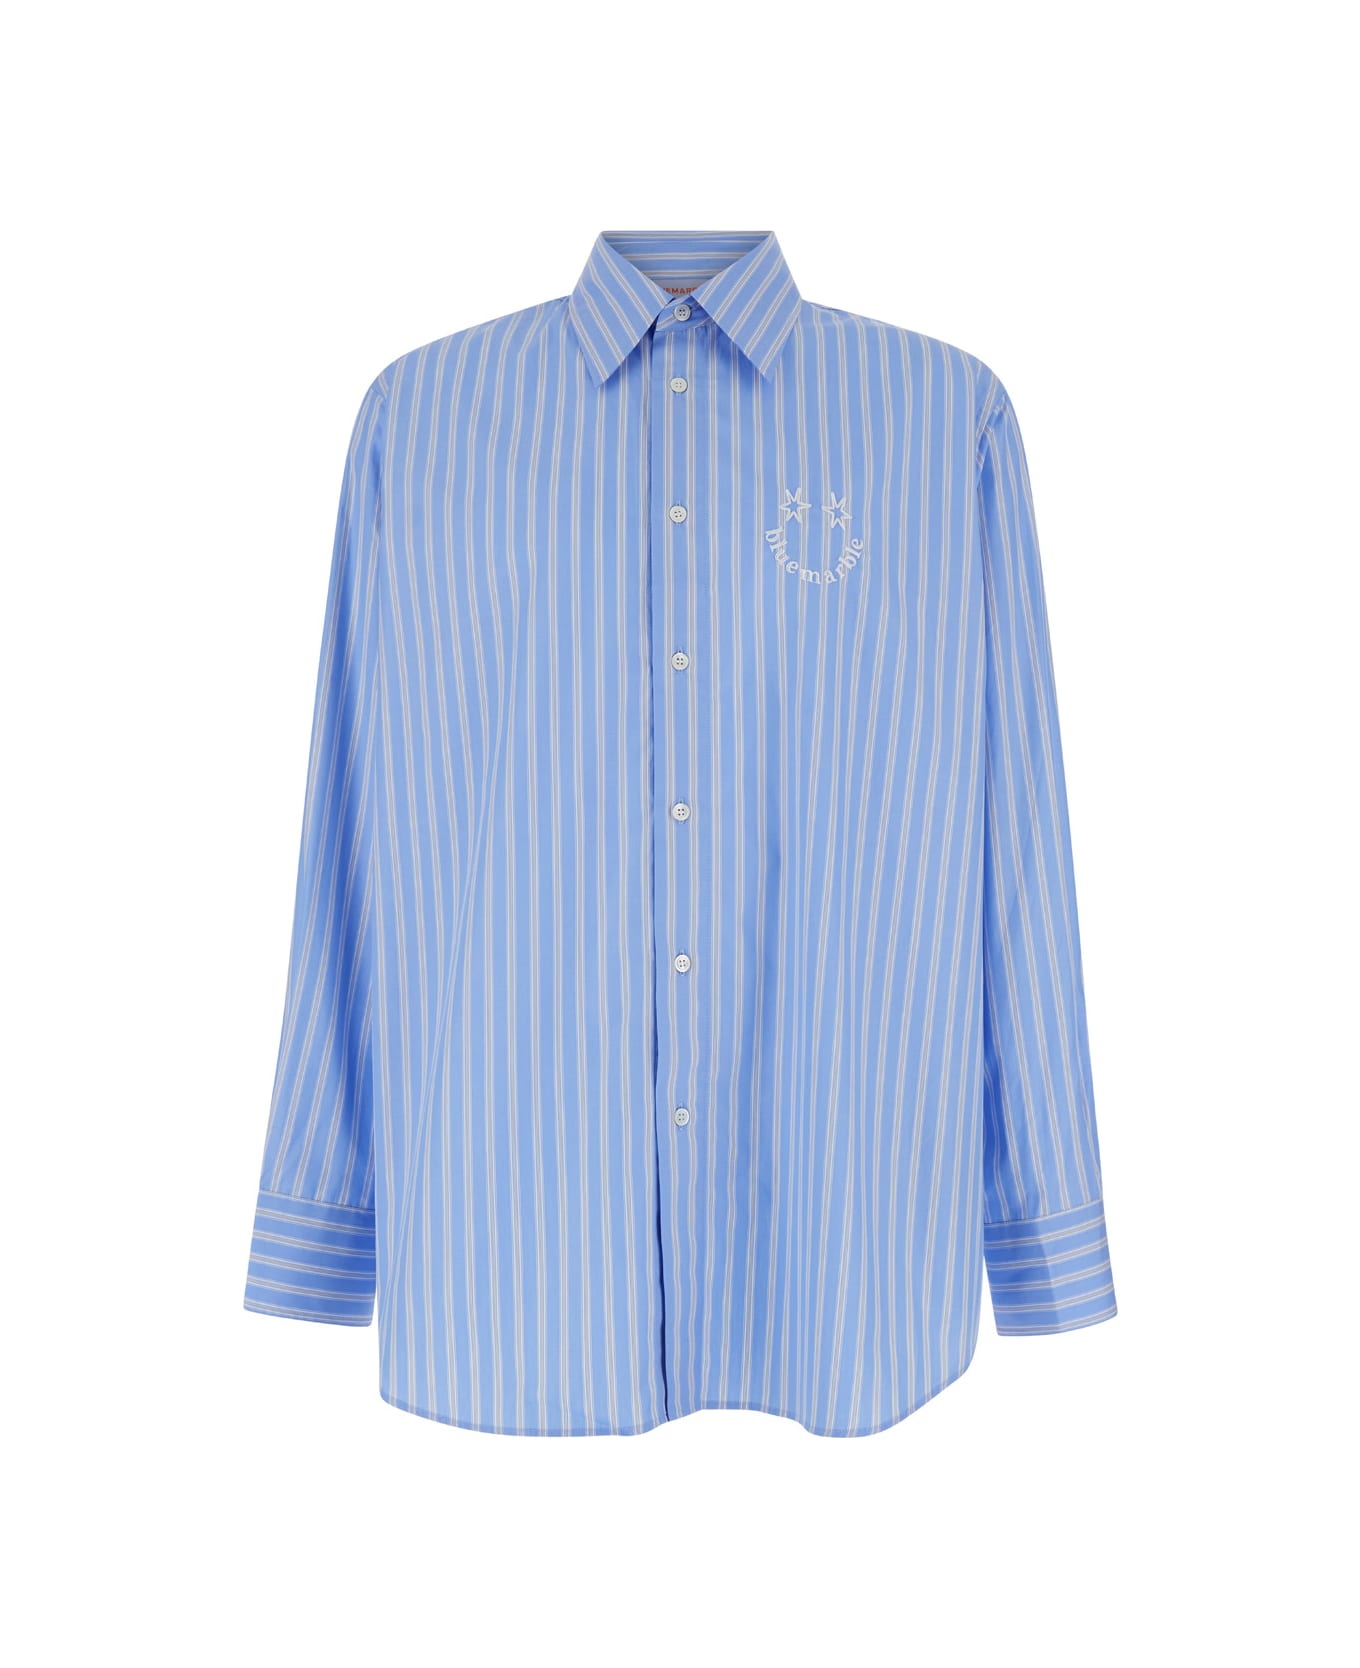 Bluemarble Smiley Stripe Popelin Shirt - Light blue